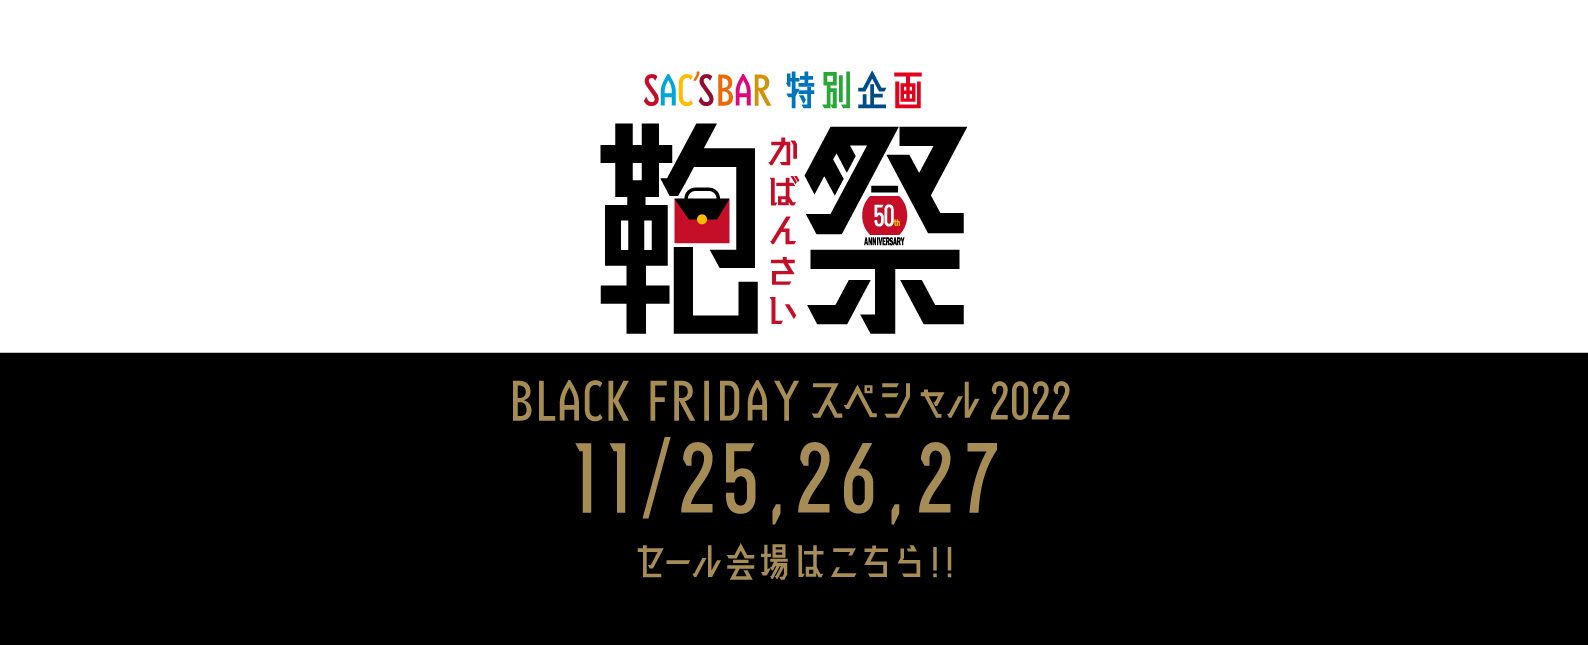 鞄祭 BLACK FRIDAY スペシャル2022